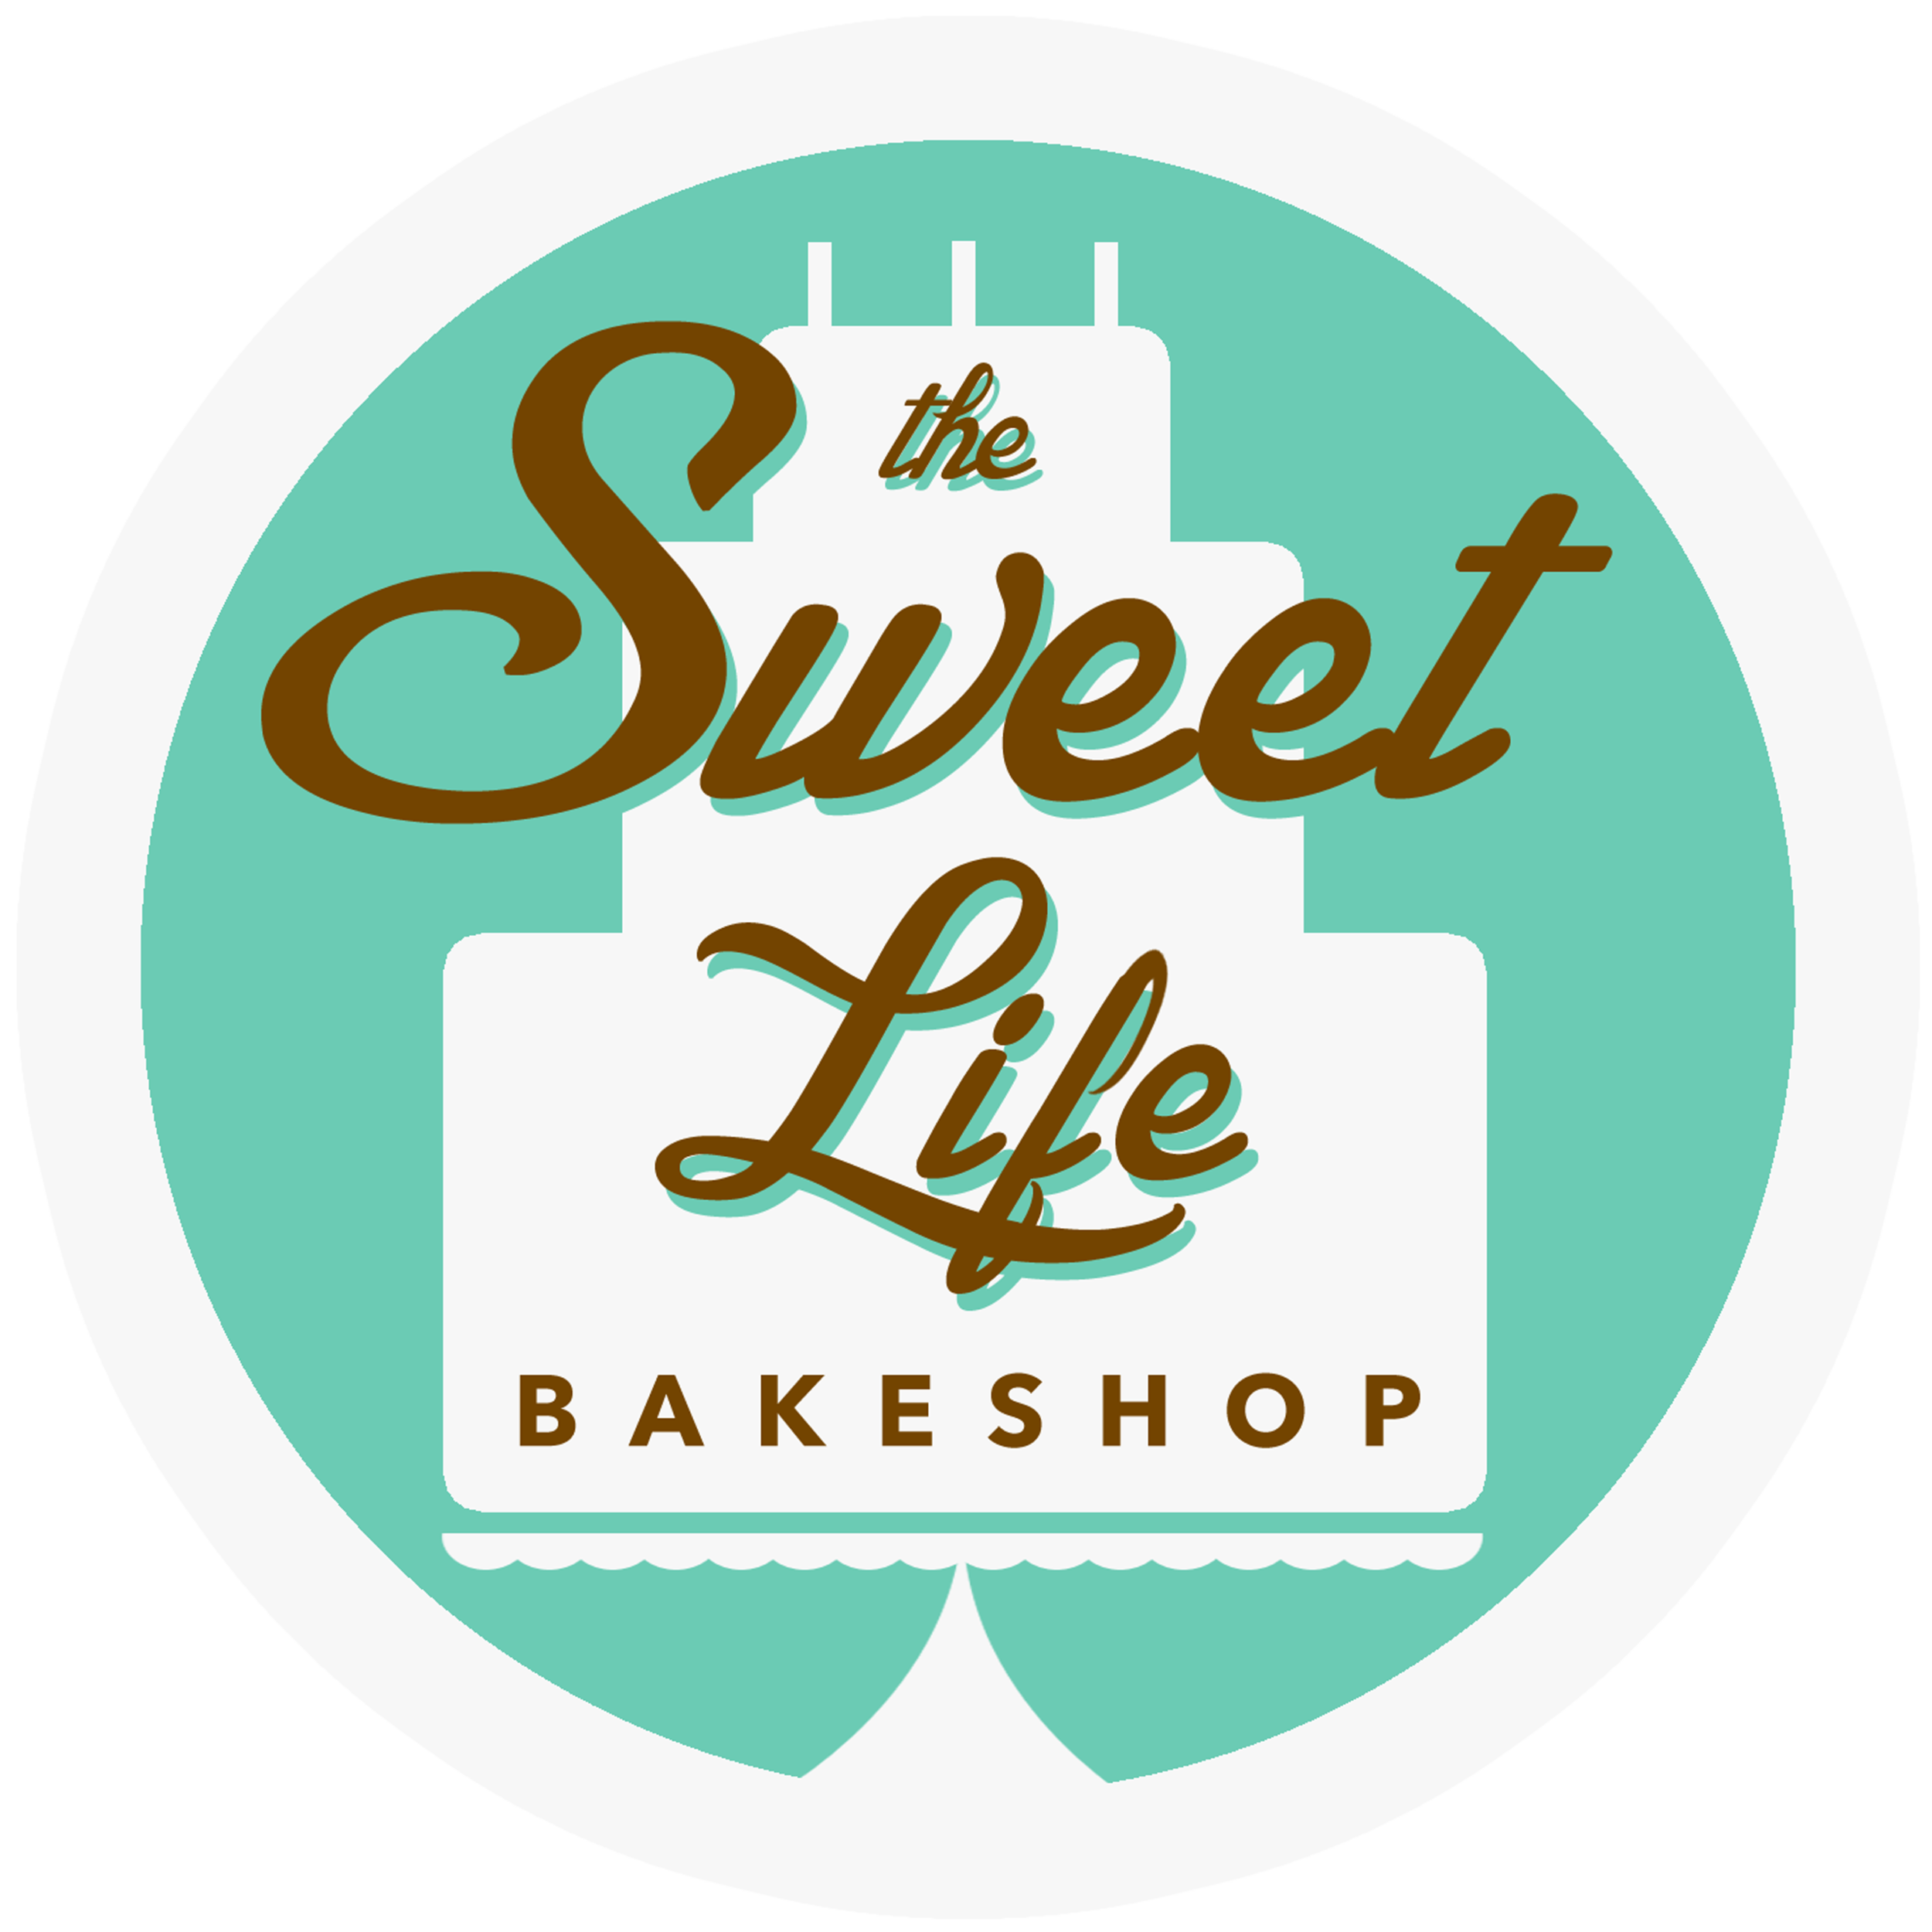 The Sweet Life Bakeshop